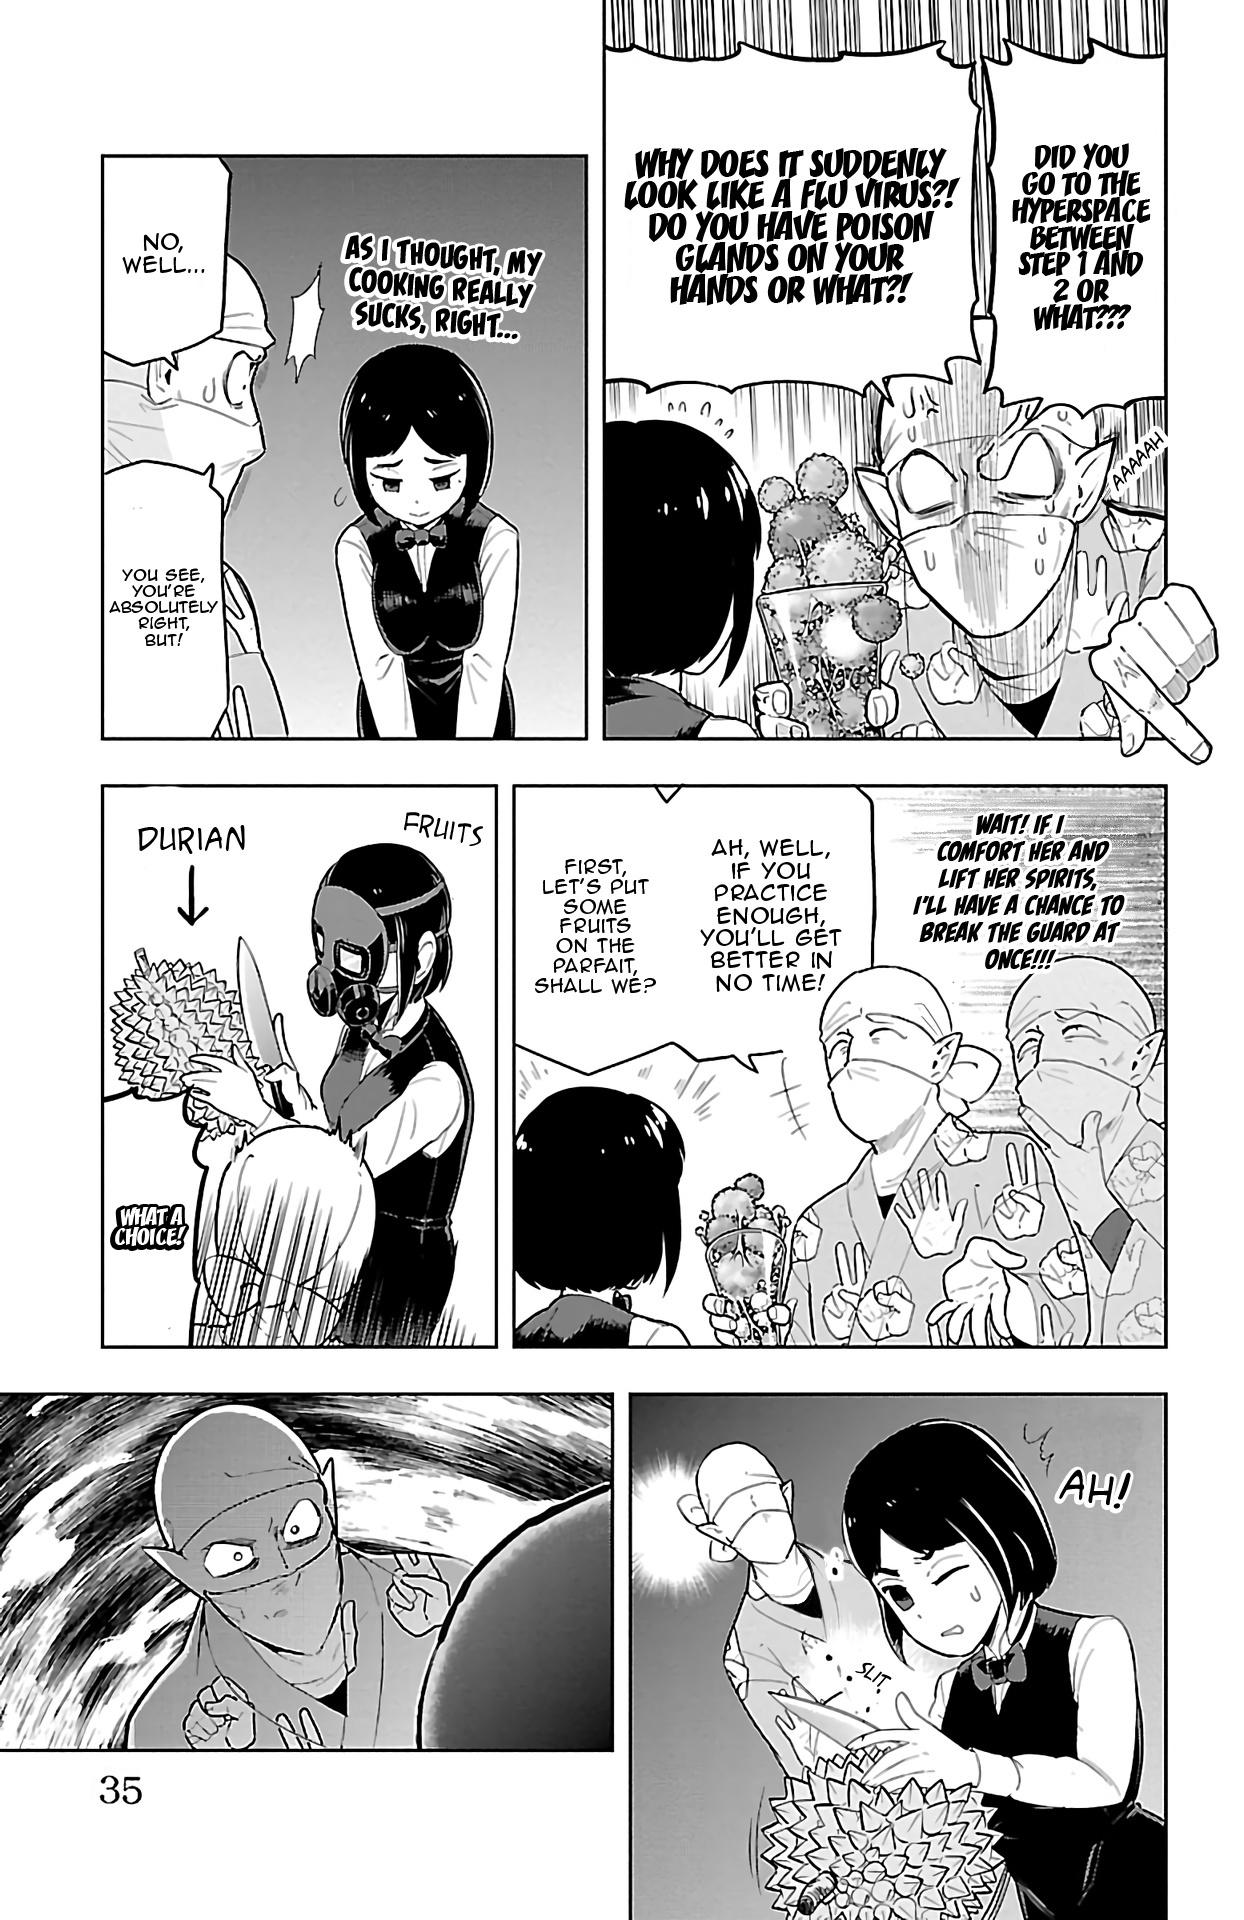 Komi-San manga panel by Durian